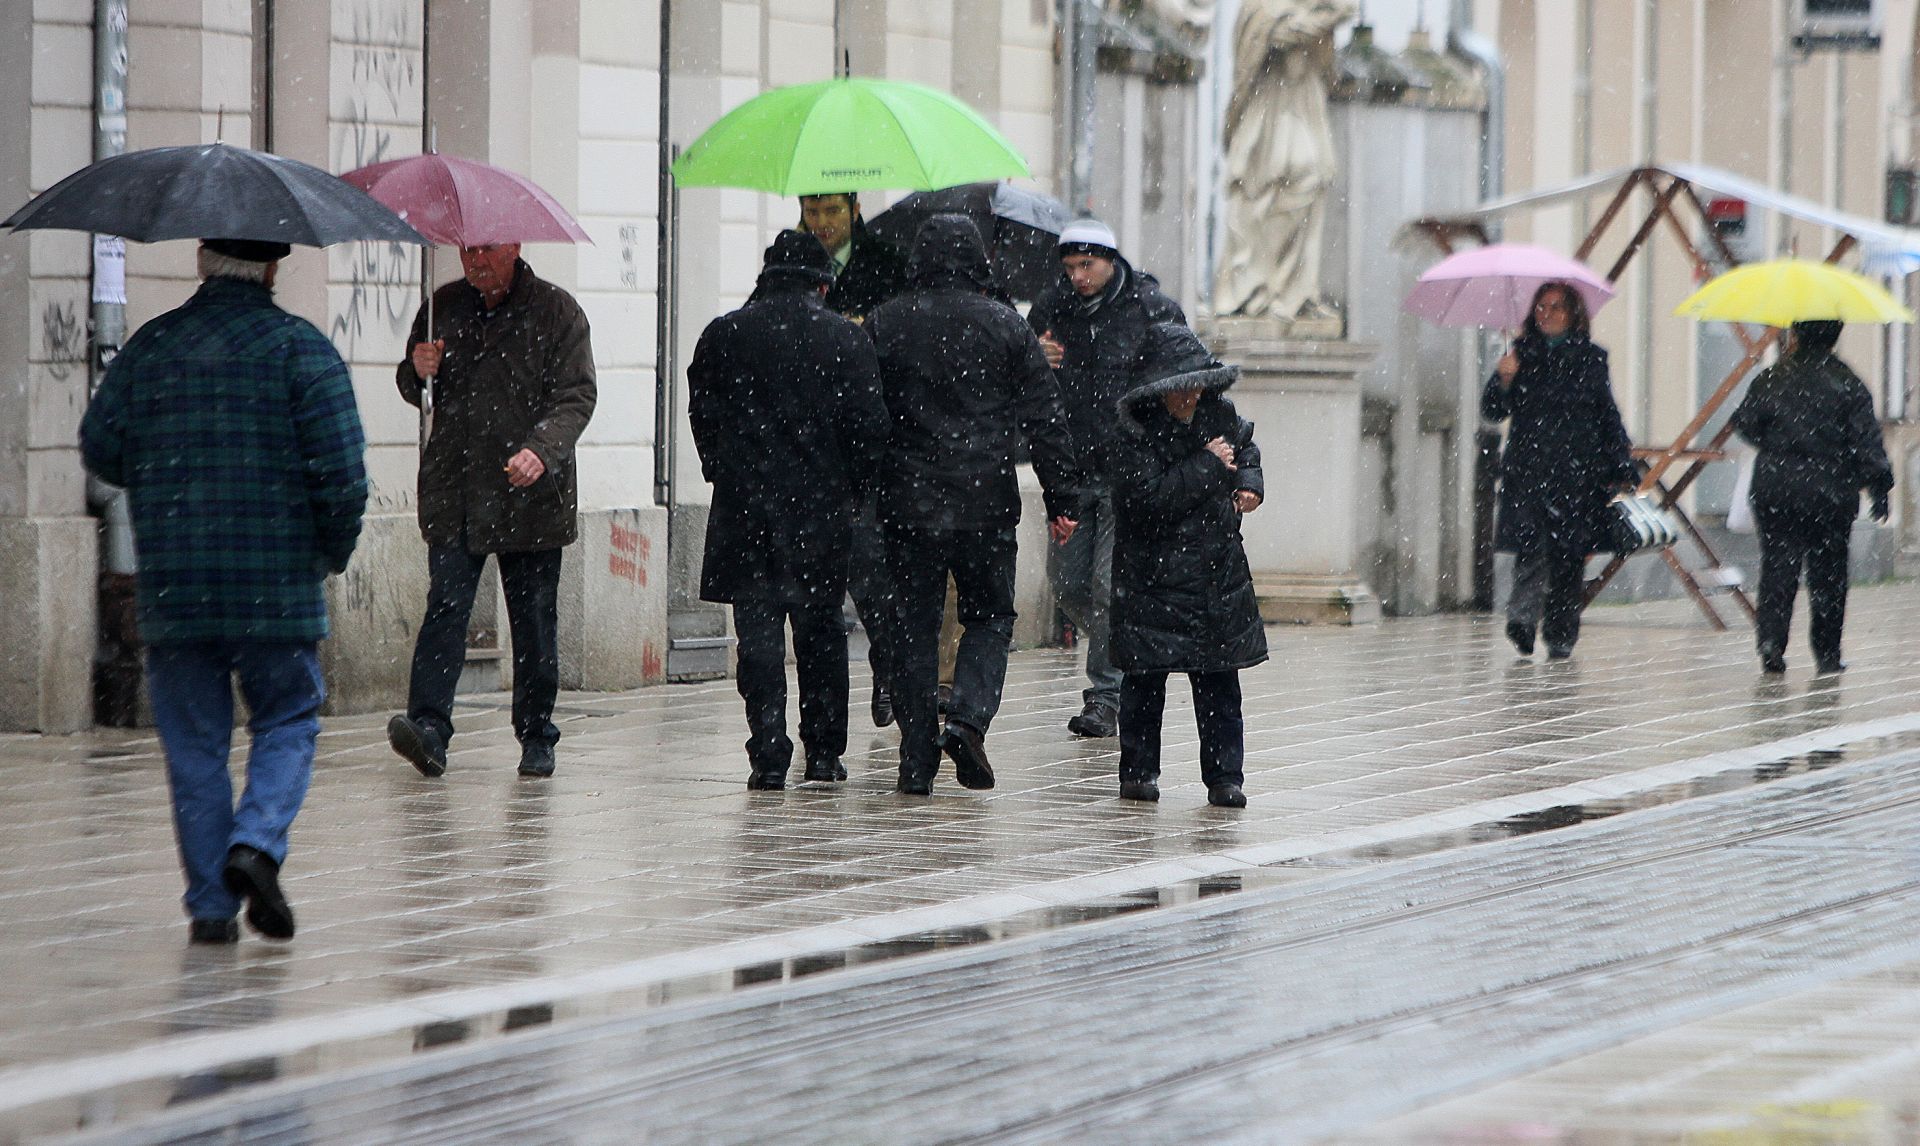 04.02.2015., Osijek - Gust snijeg i hladan vjetar natjerali Osjecane na topliju odjecu i kisobrane.
 Photo: Marko Mrkonjic/PIXSELL